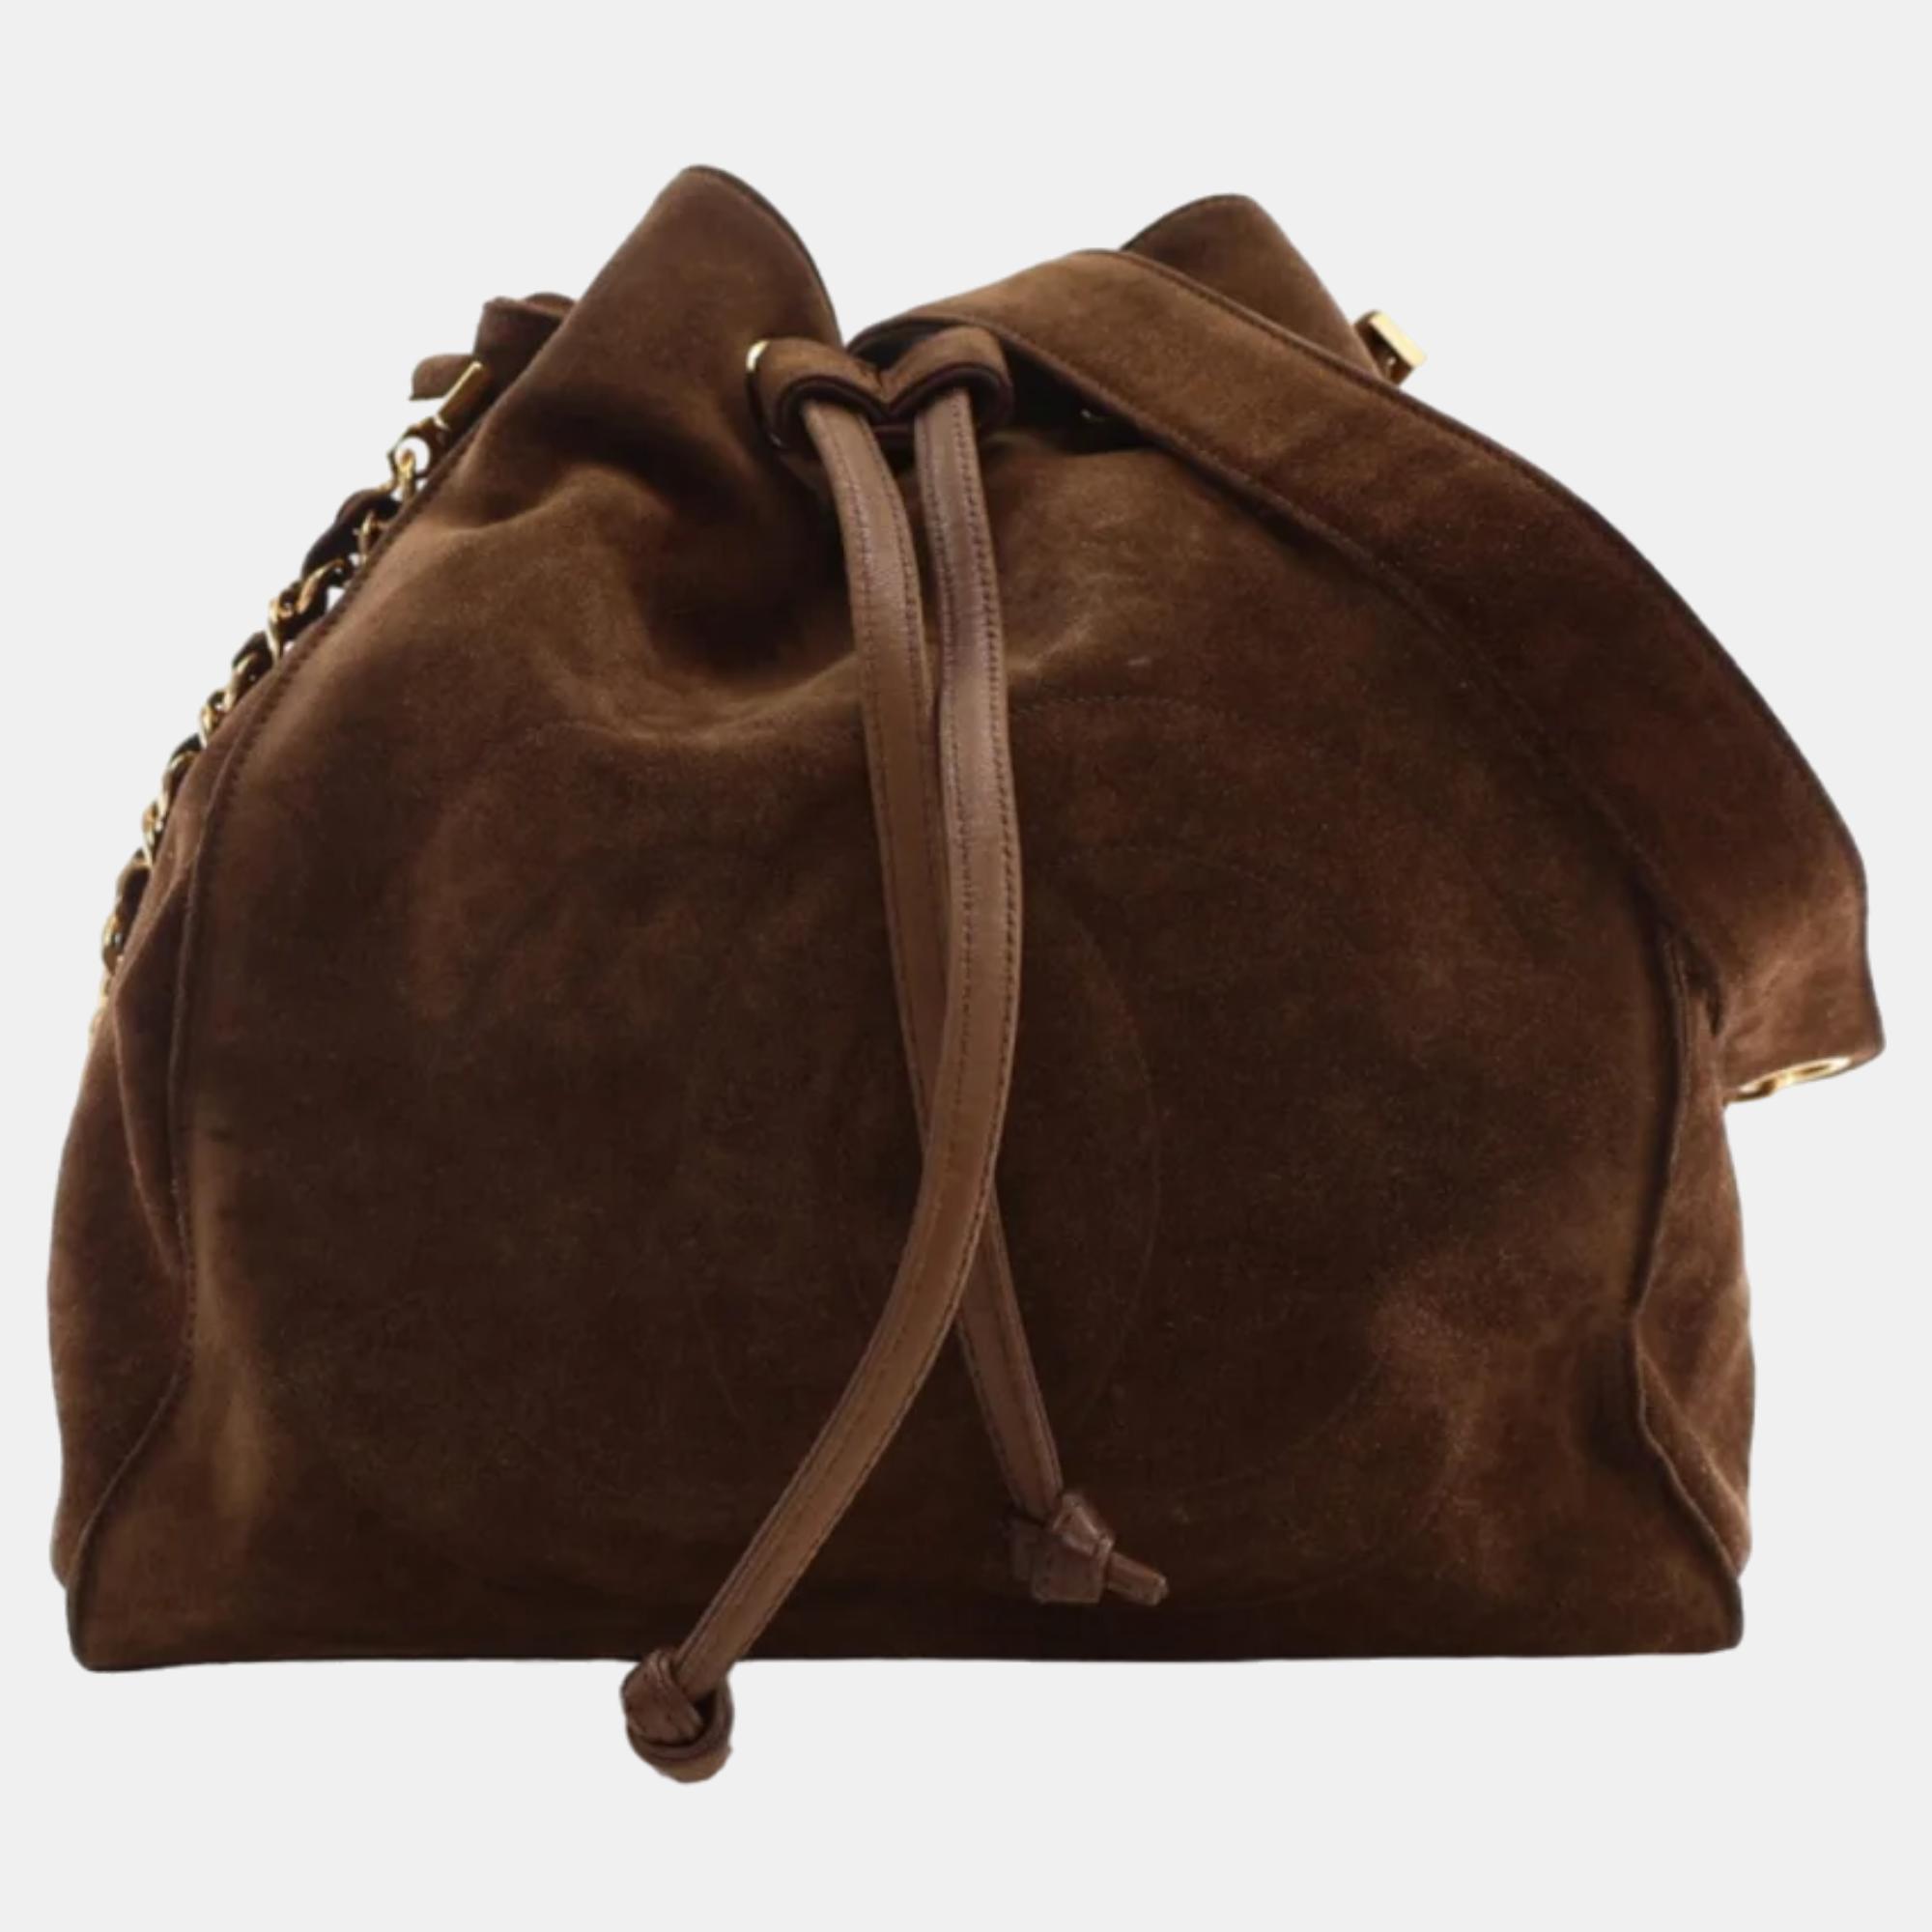 Chanel brown suede cc vintage bucket bag